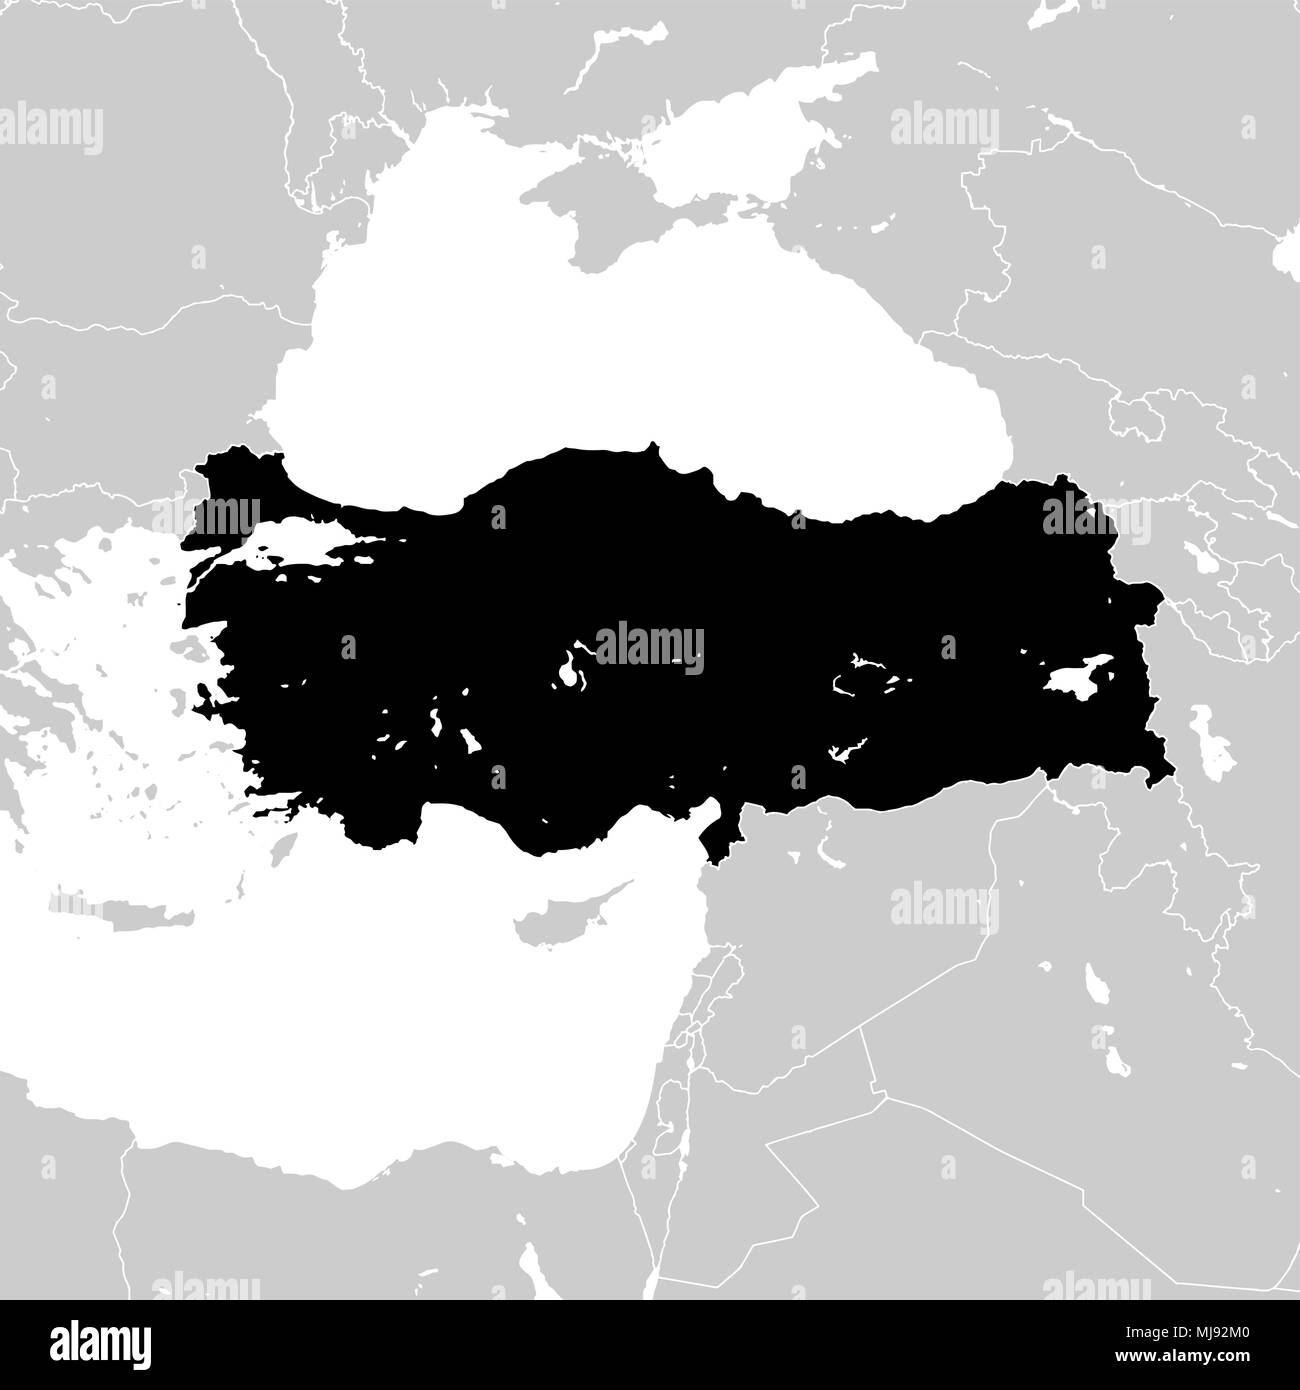 La Turchia con i paesi europei vicini. alta dettagliata mappa vettoriale - monocrome Illustrazione Vettoriale